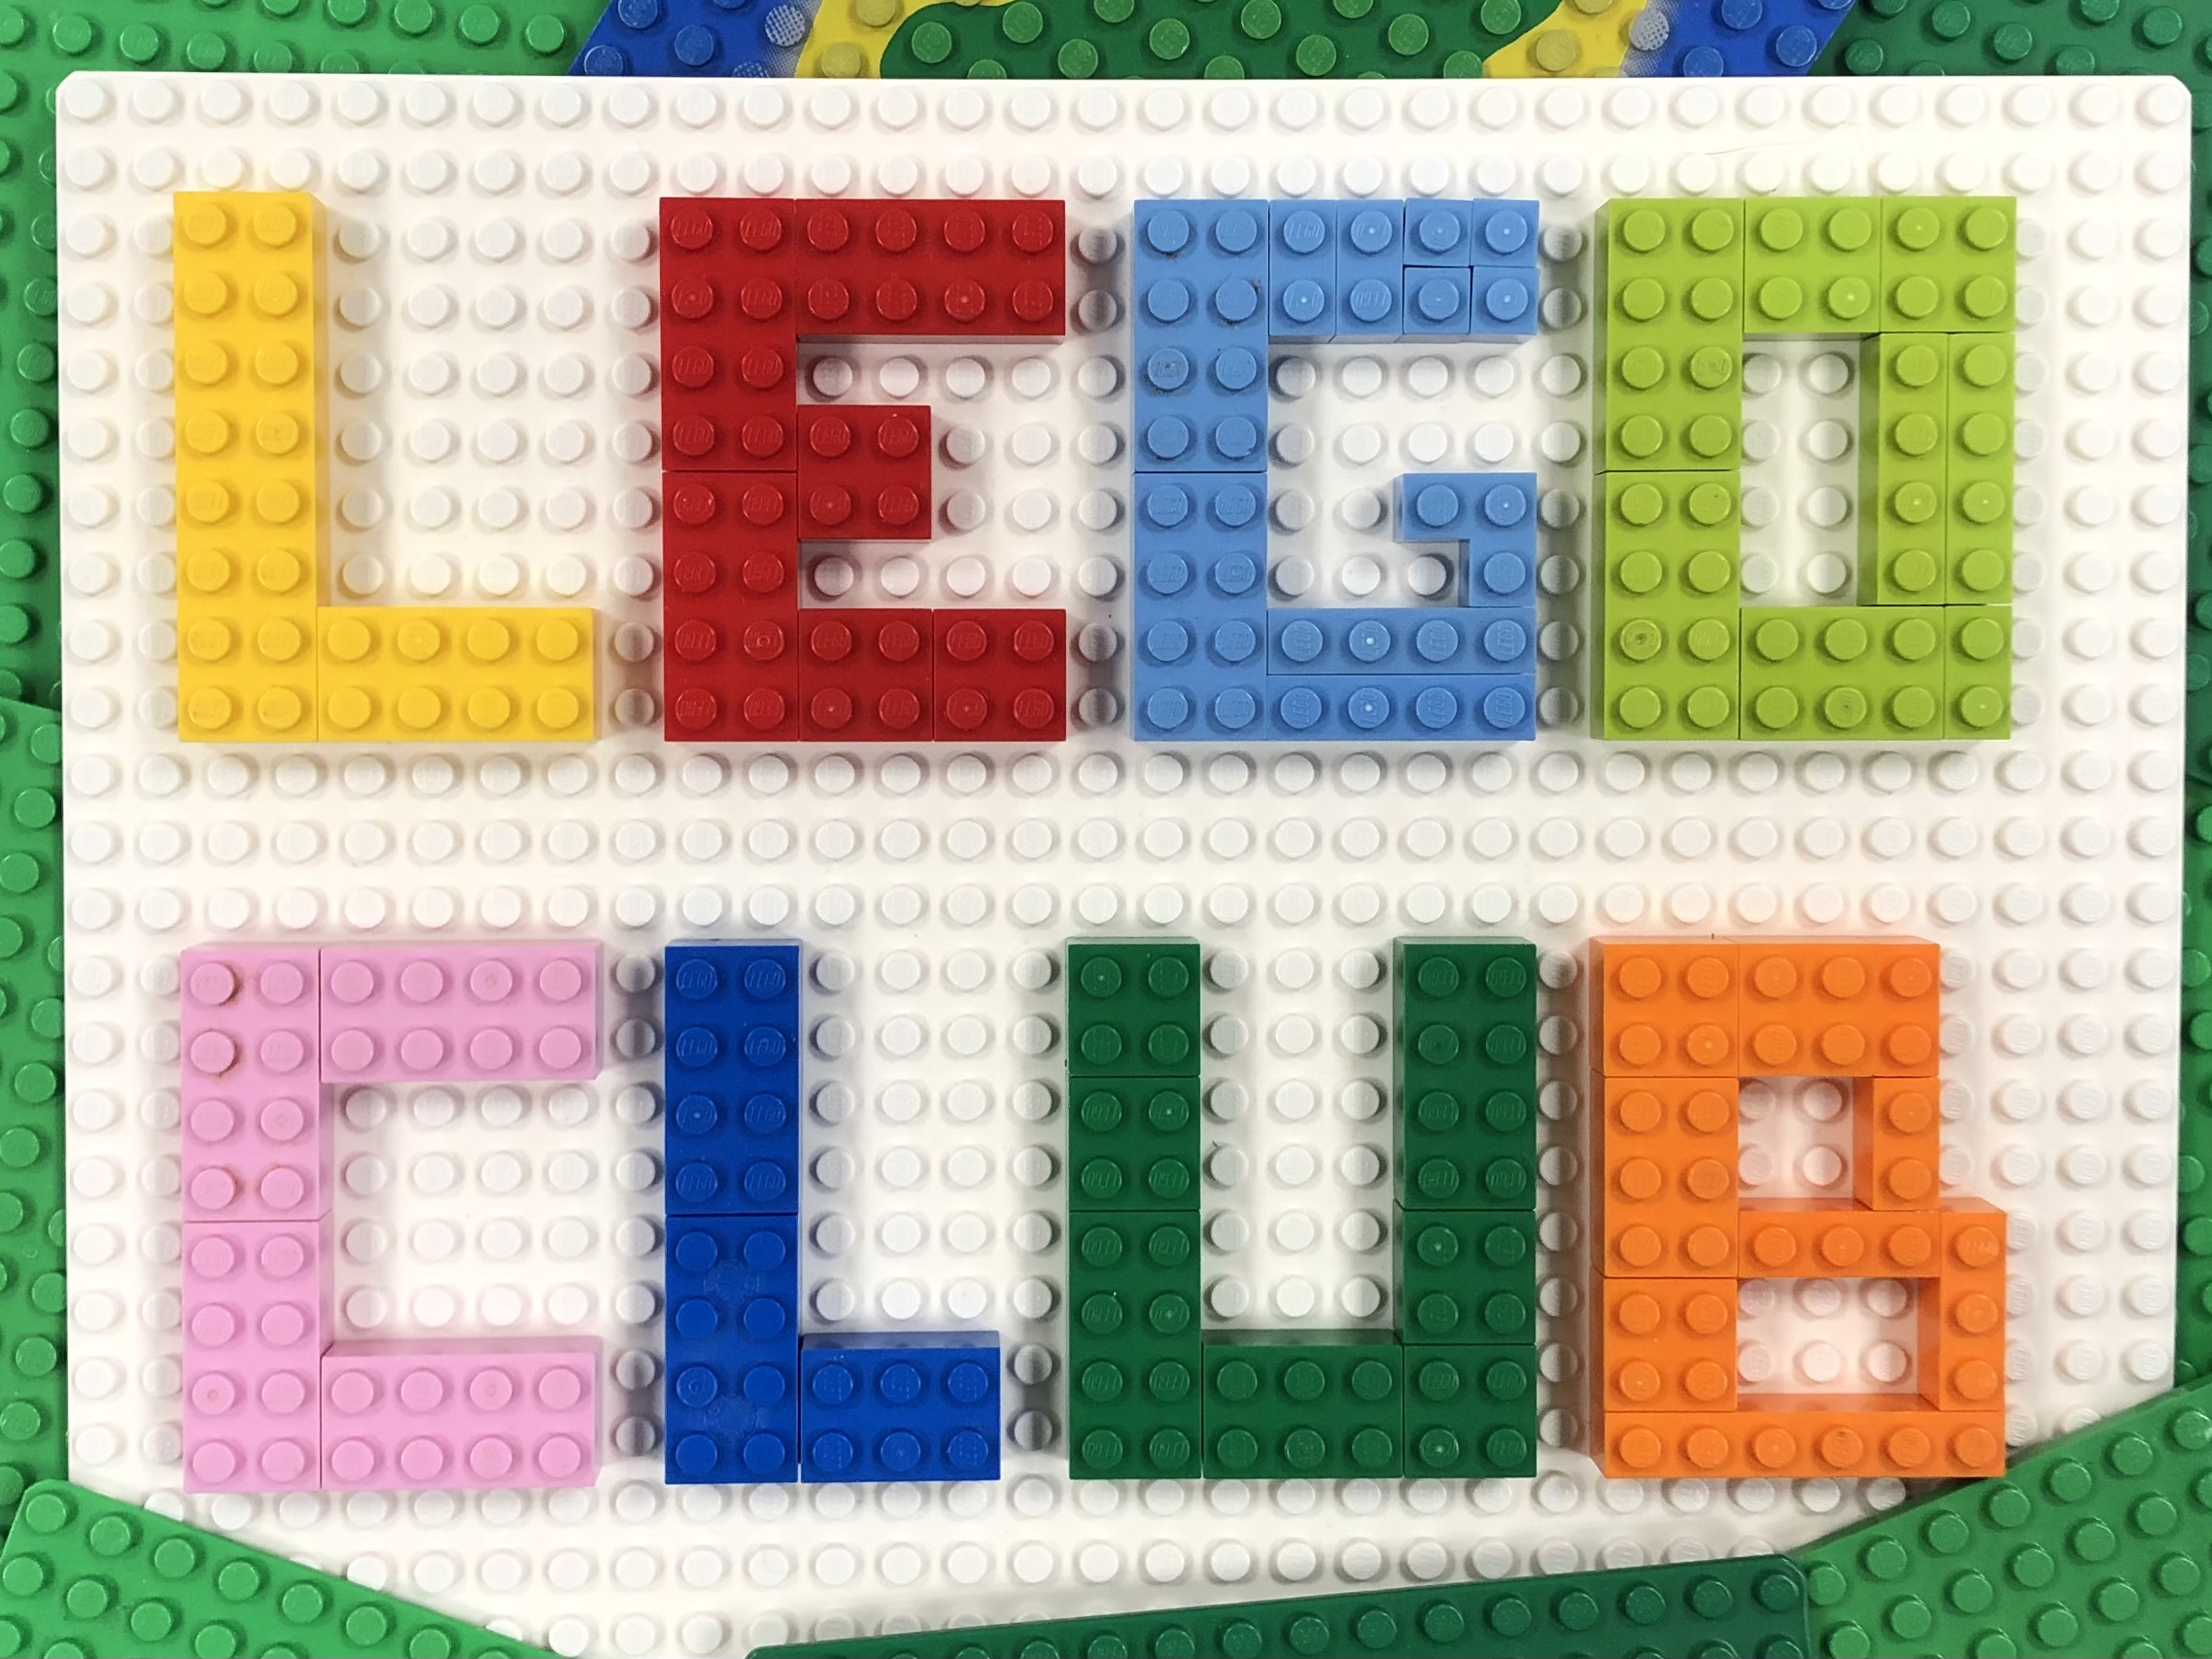 Lego club spelled out using Lego bricks